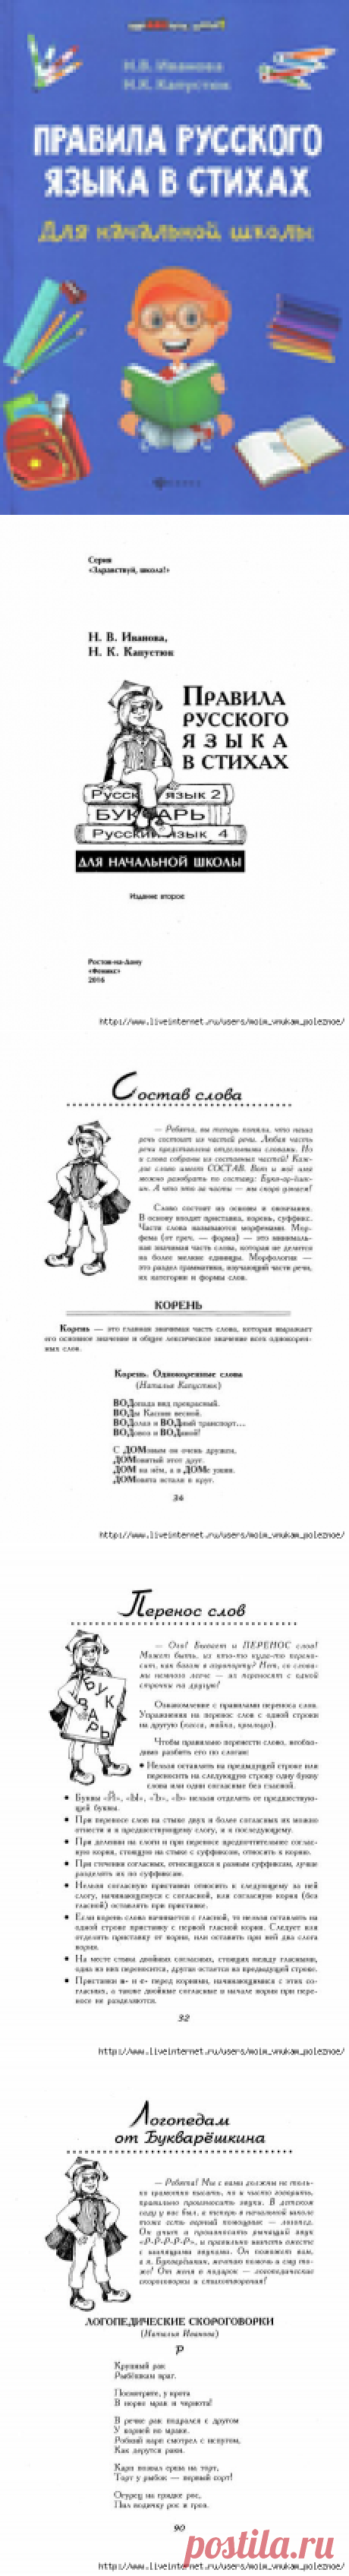 ПРАВИЛА русского языка в стихах - великолепное пособие для начальной школы - распечатать